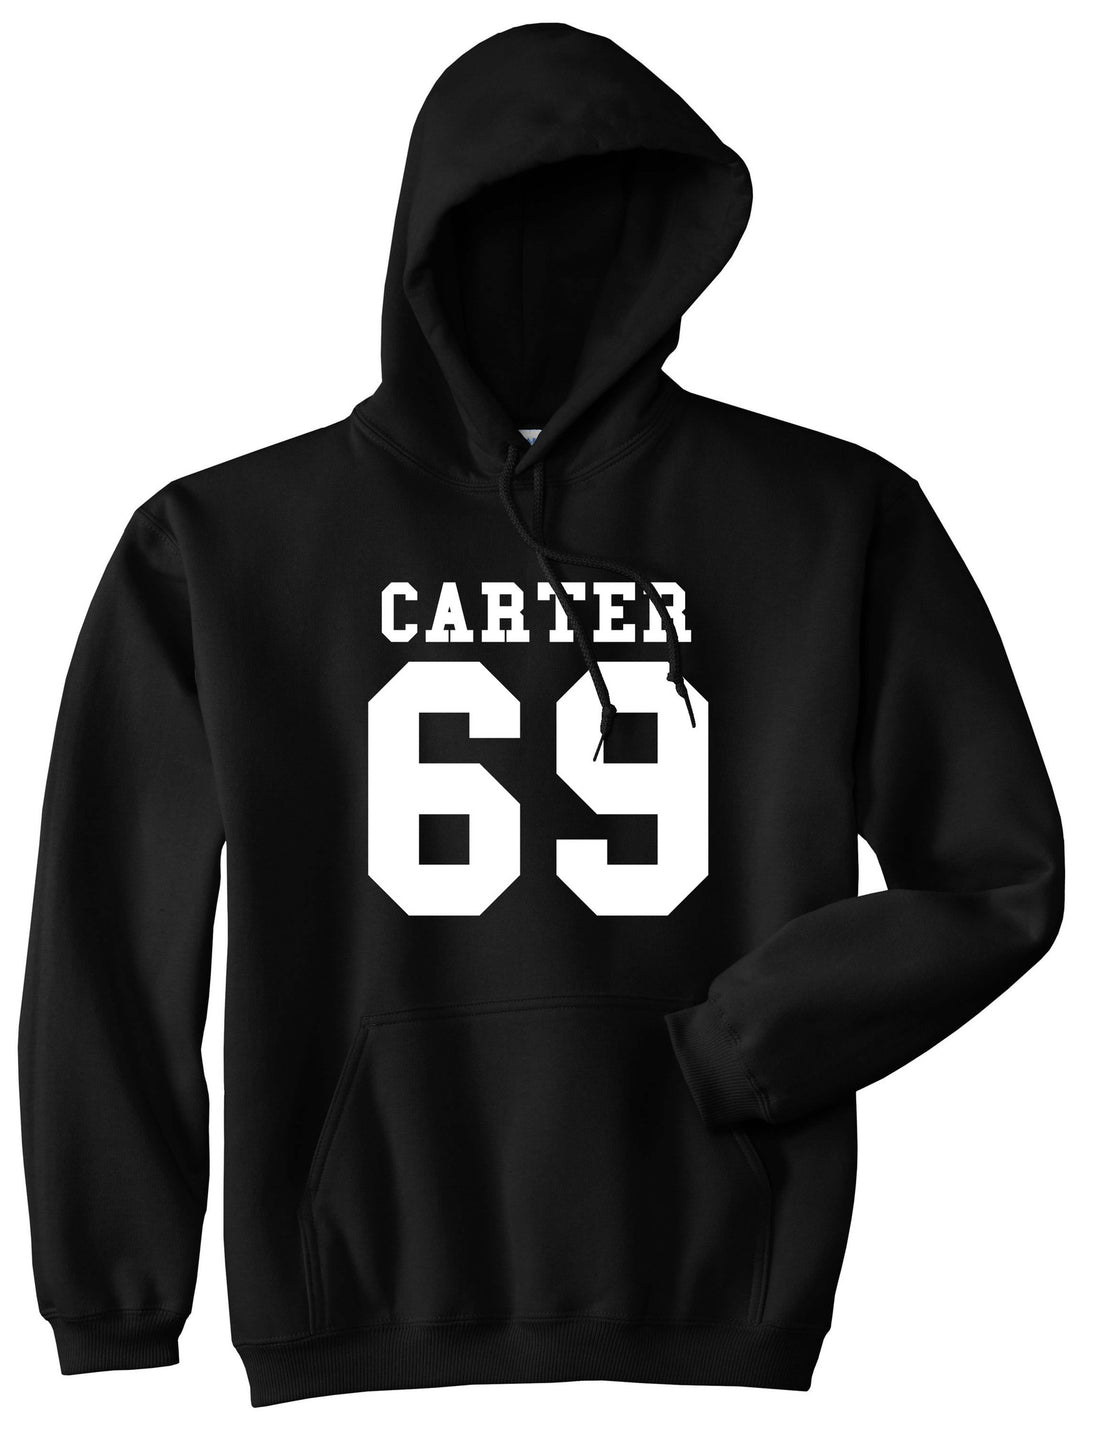  Carter 69 Team Pullover Hoodie Hoody in Black by Kings Of NY